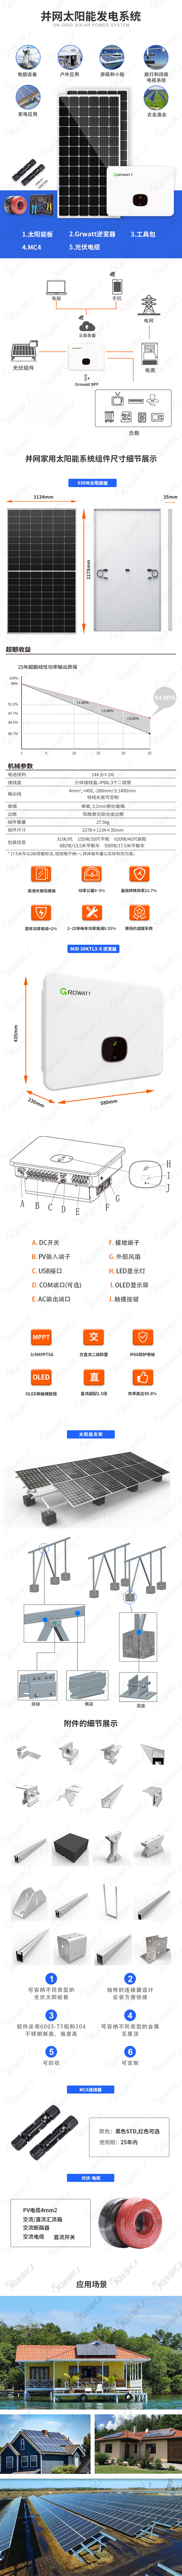 MID-30KTL3-X并网系统详情（康威斯-中文）.jpg